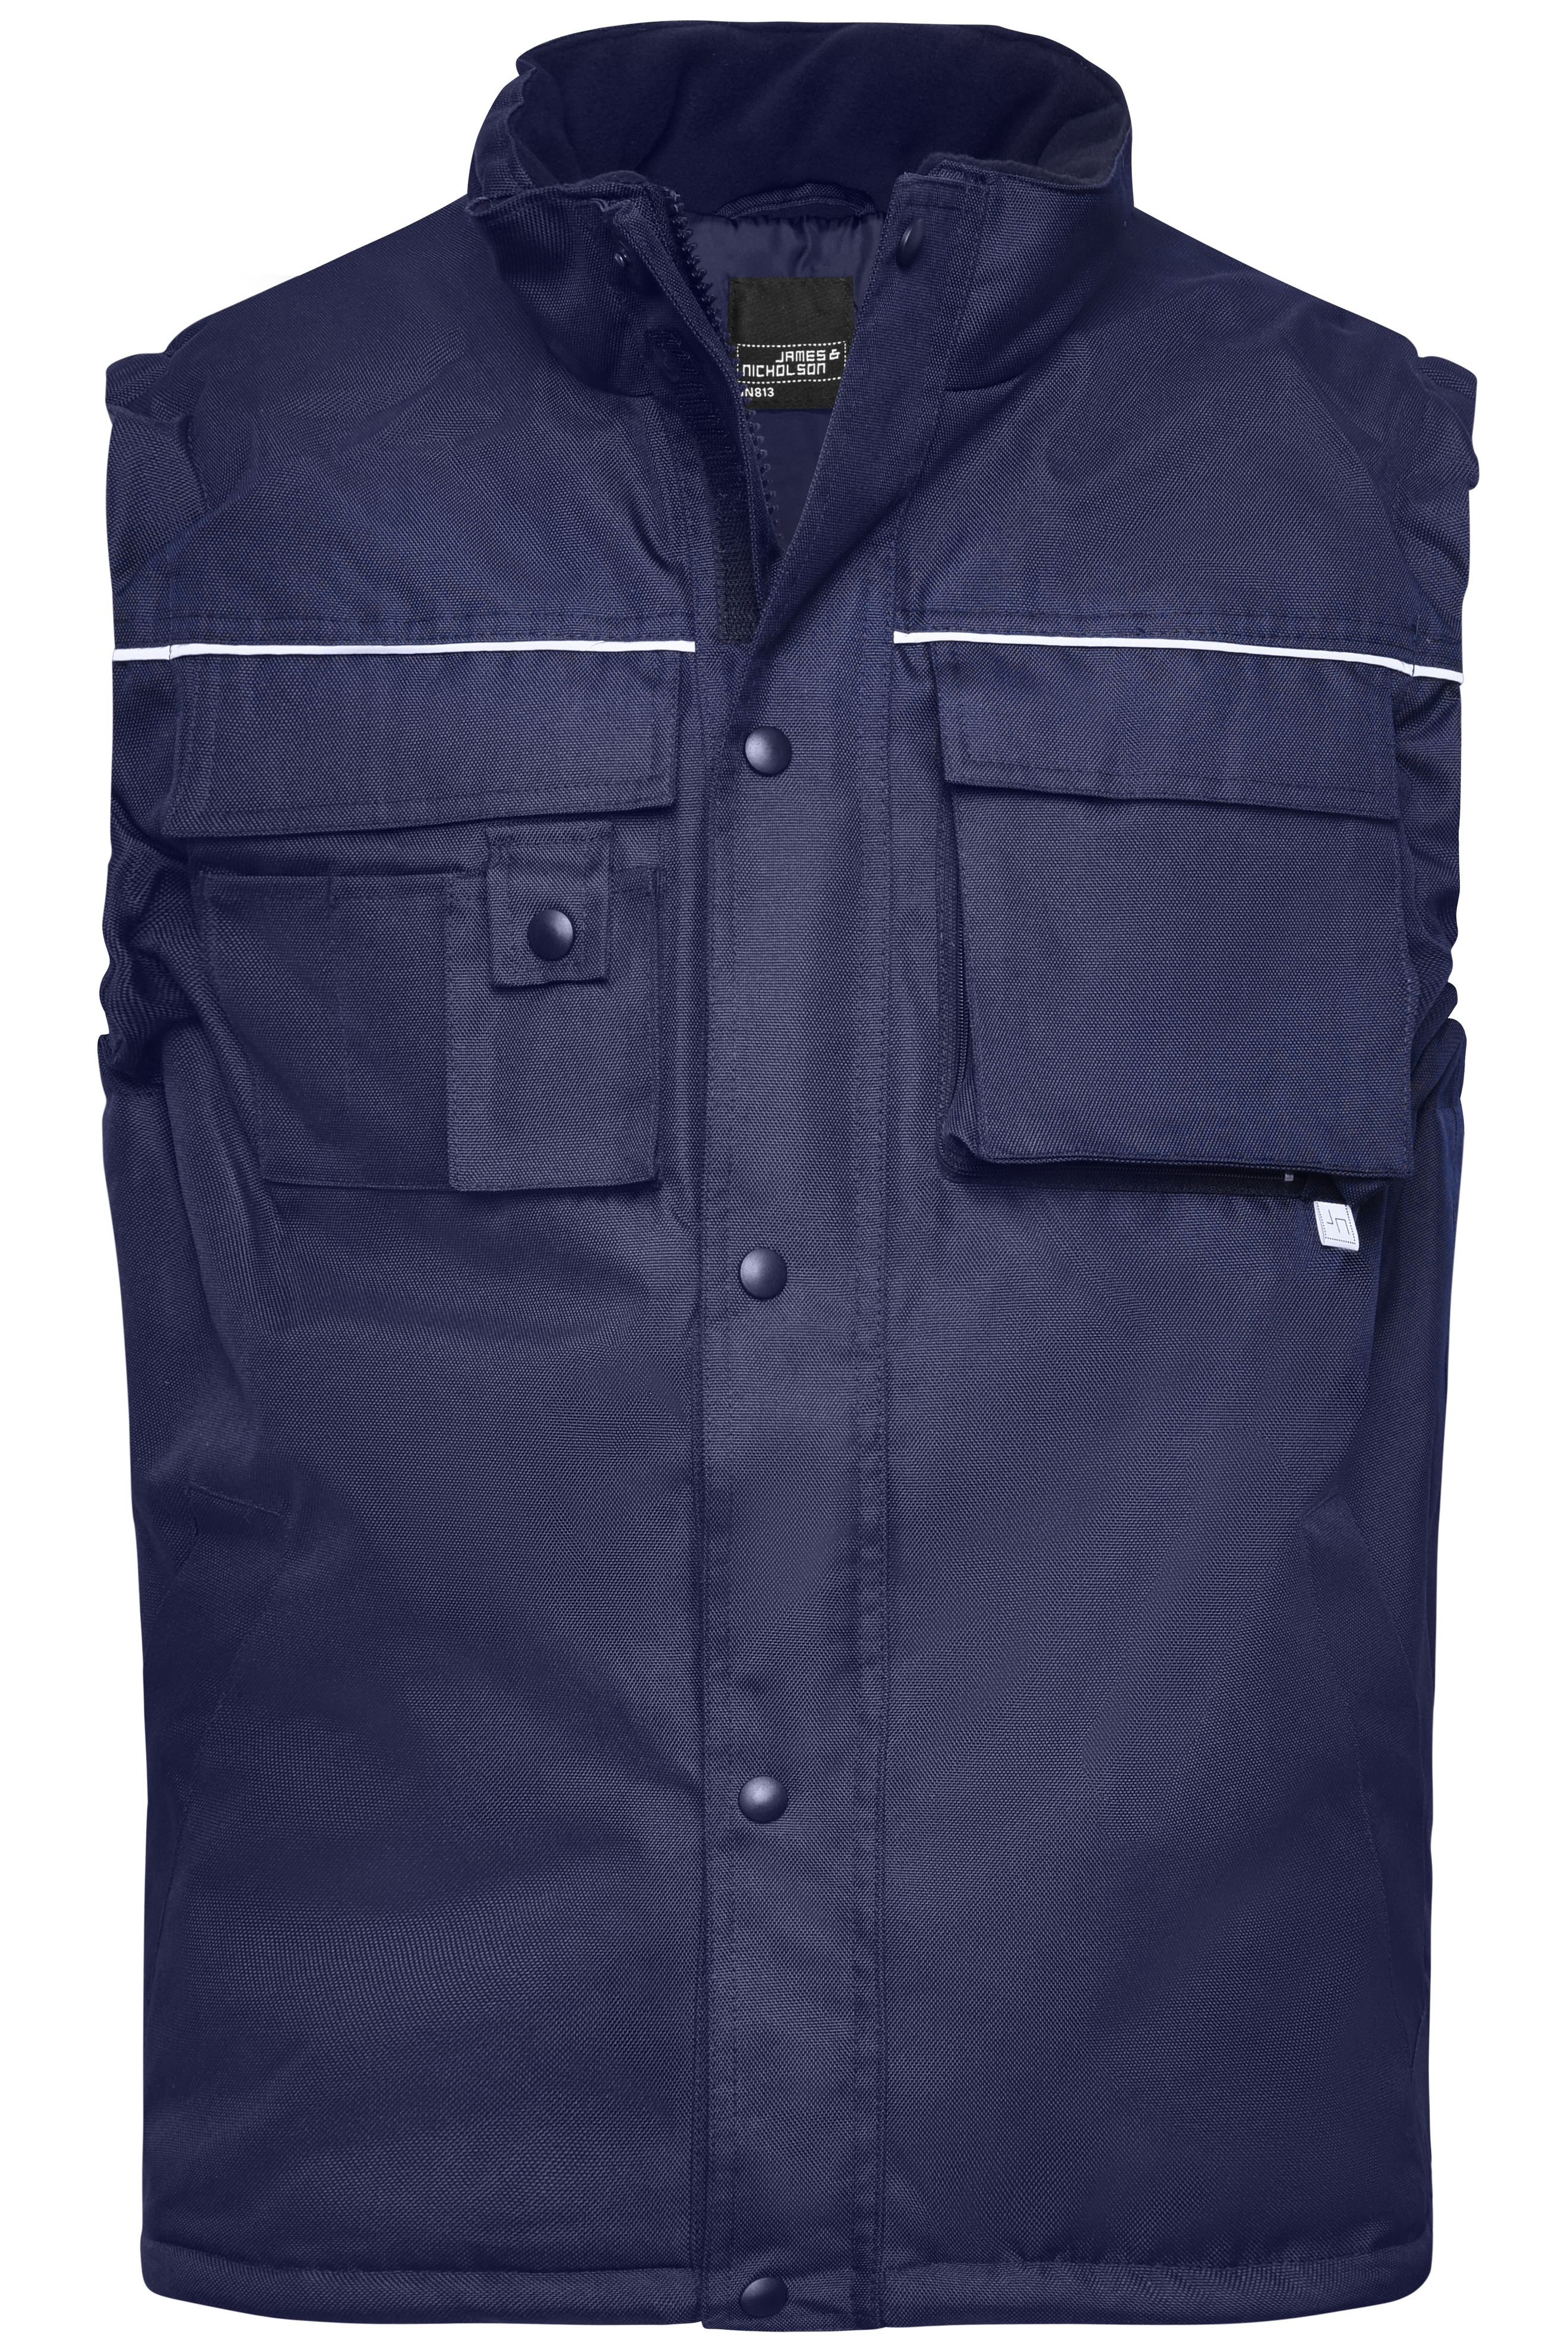 Workwear Vest JN813 Robuste, wattierte Weste